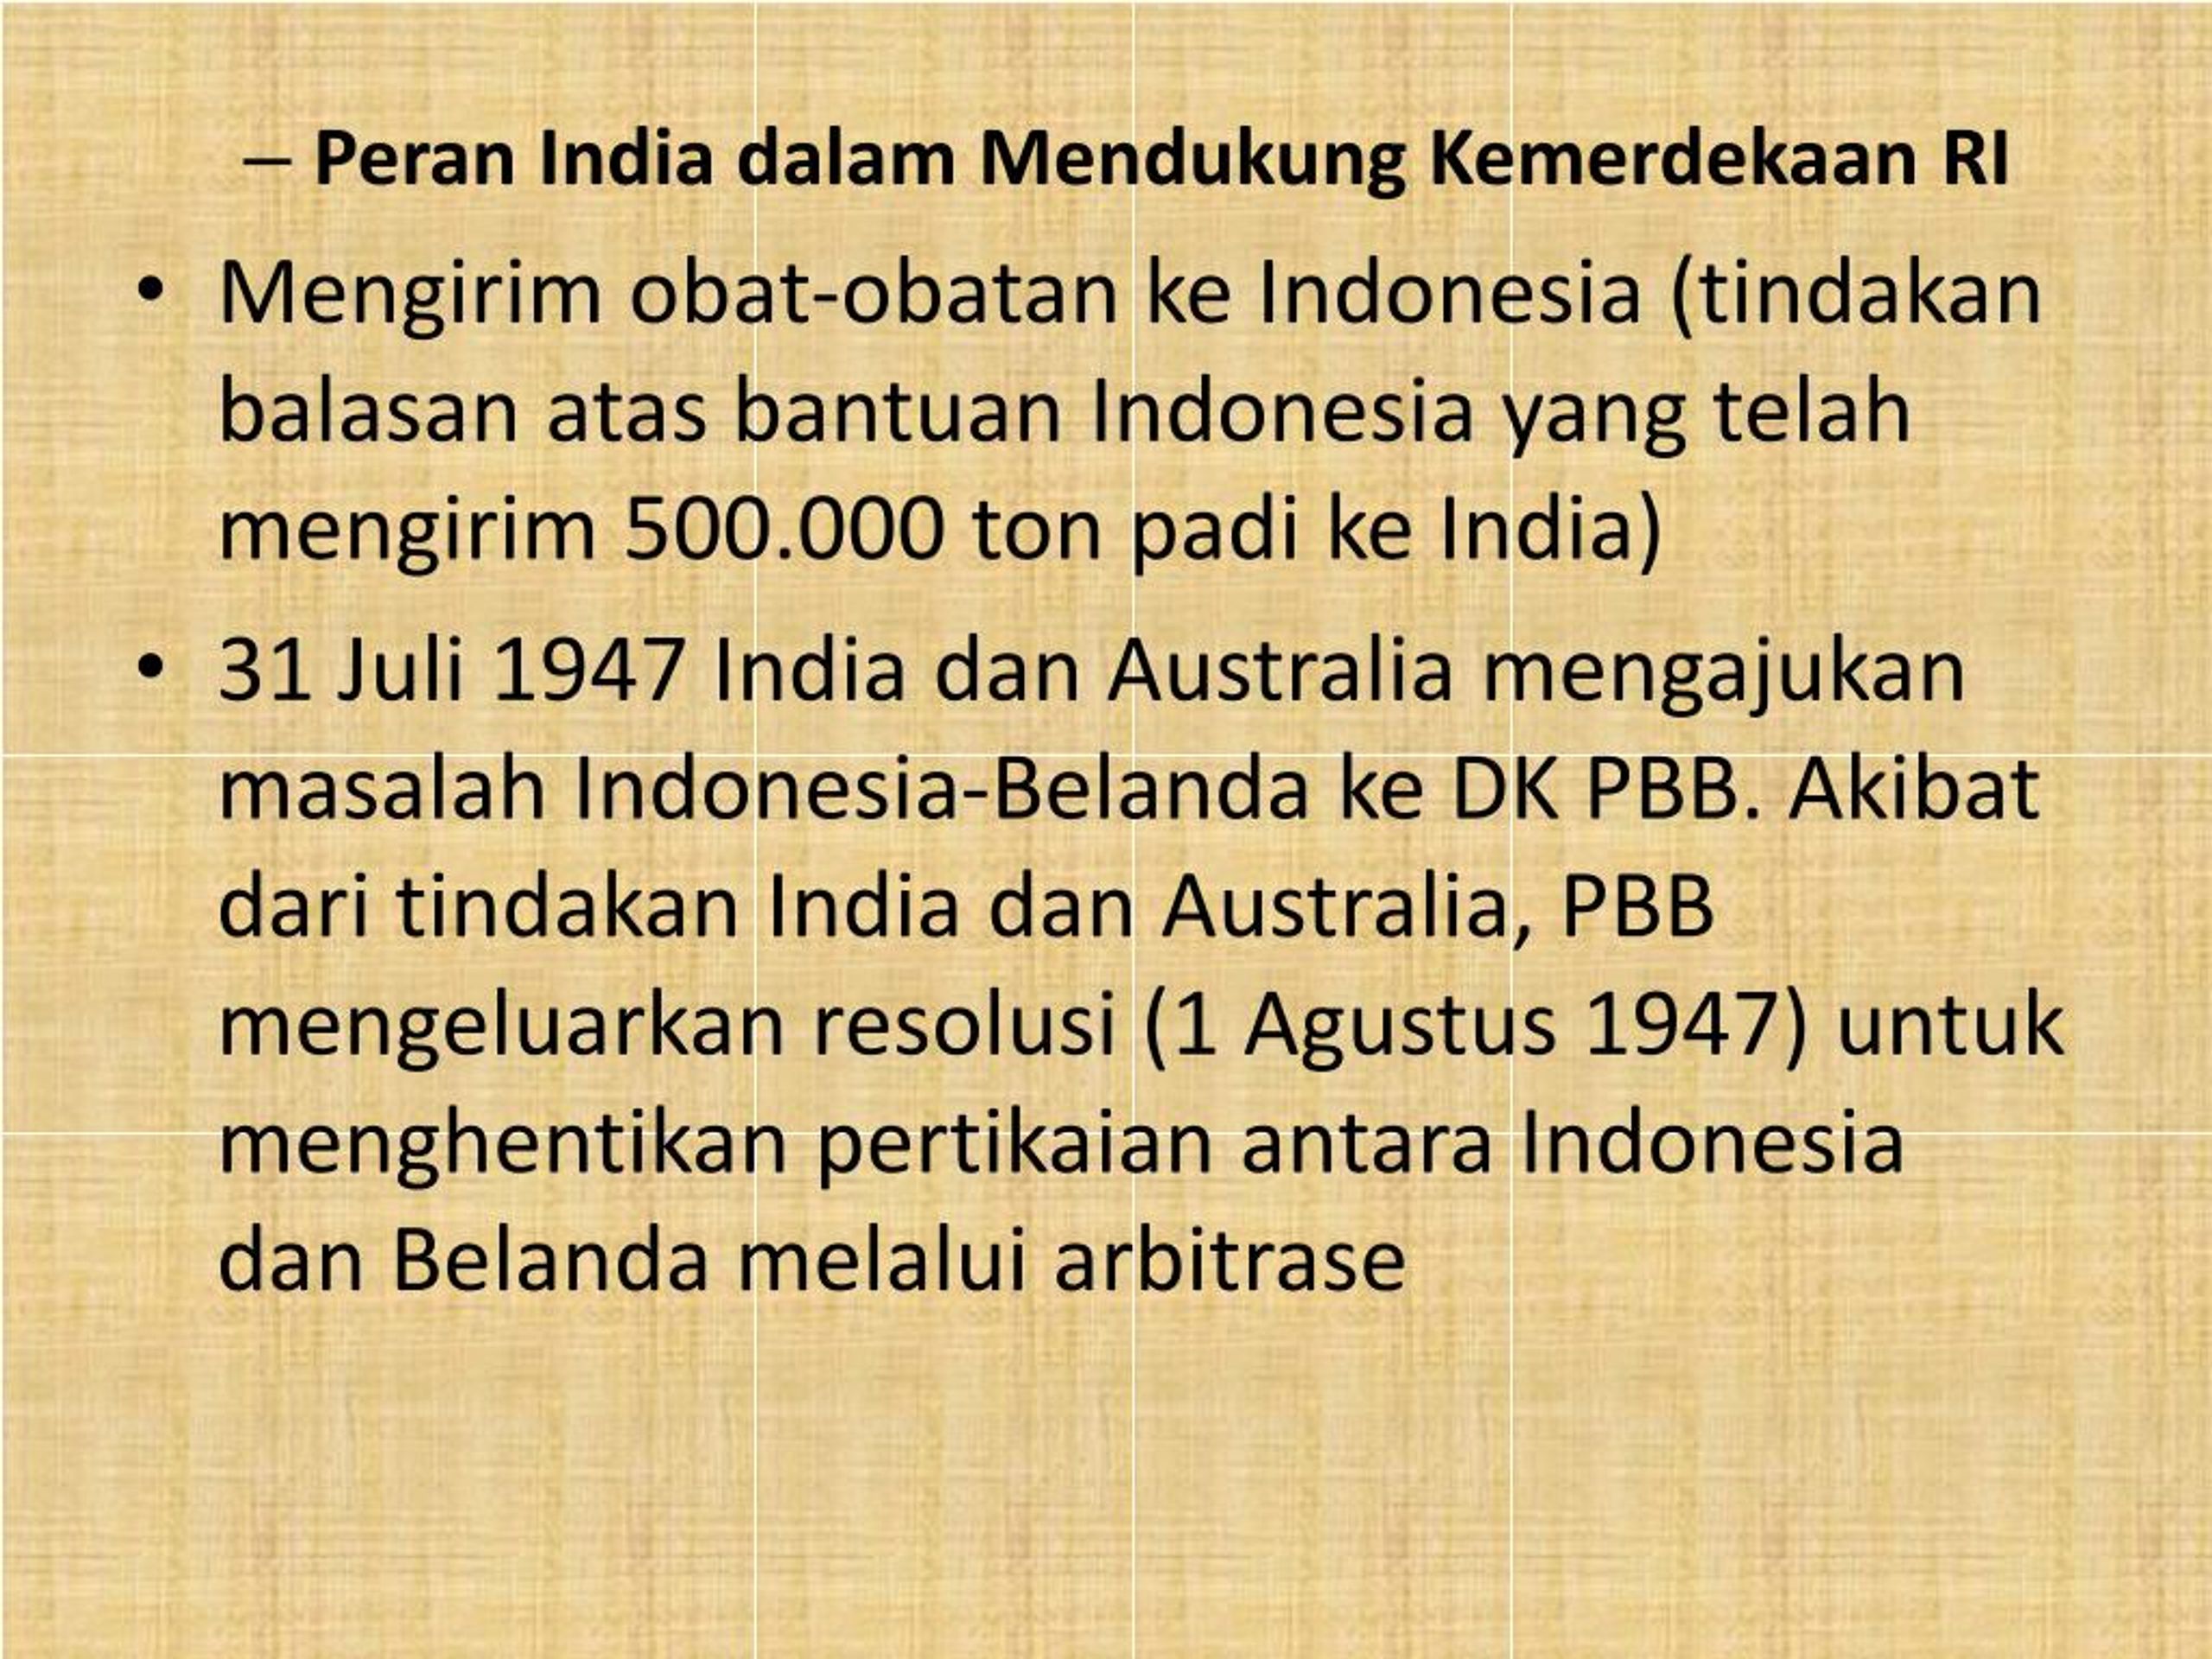 India menjadi salah satu negara yang menjadi pelopor pengakuan internasional atas kemerdekaan indonesia salah satu peran india dalam mendukung kemerdekaan indonesia adalah